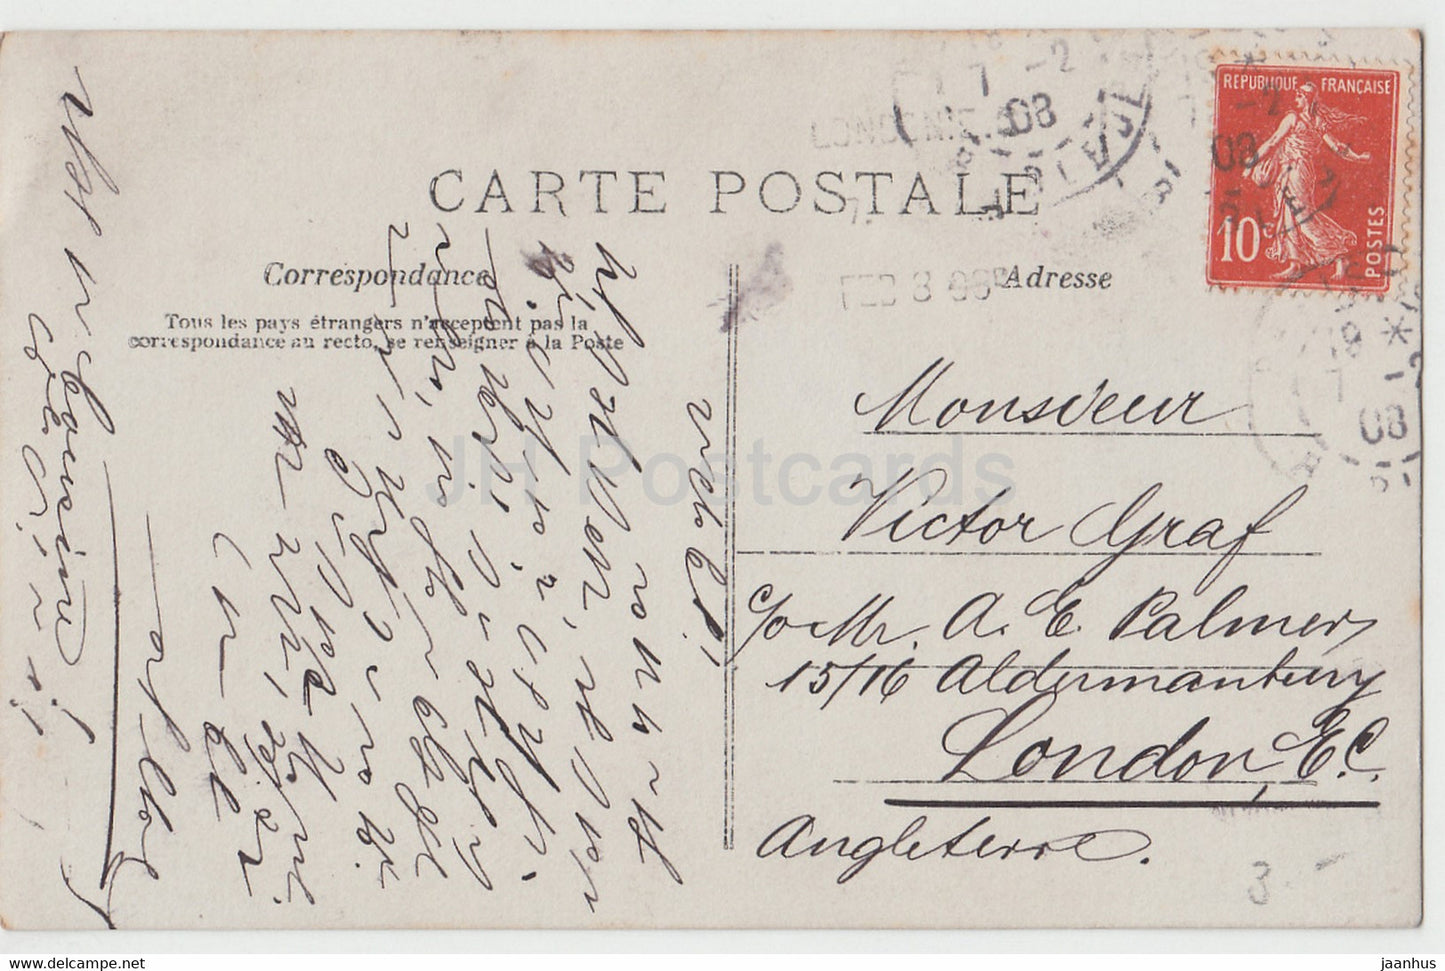 femme - Messager au Bonheur - colombe - oiseaux - 643 - carte postale ancienne - France - 1908 - oblitéré